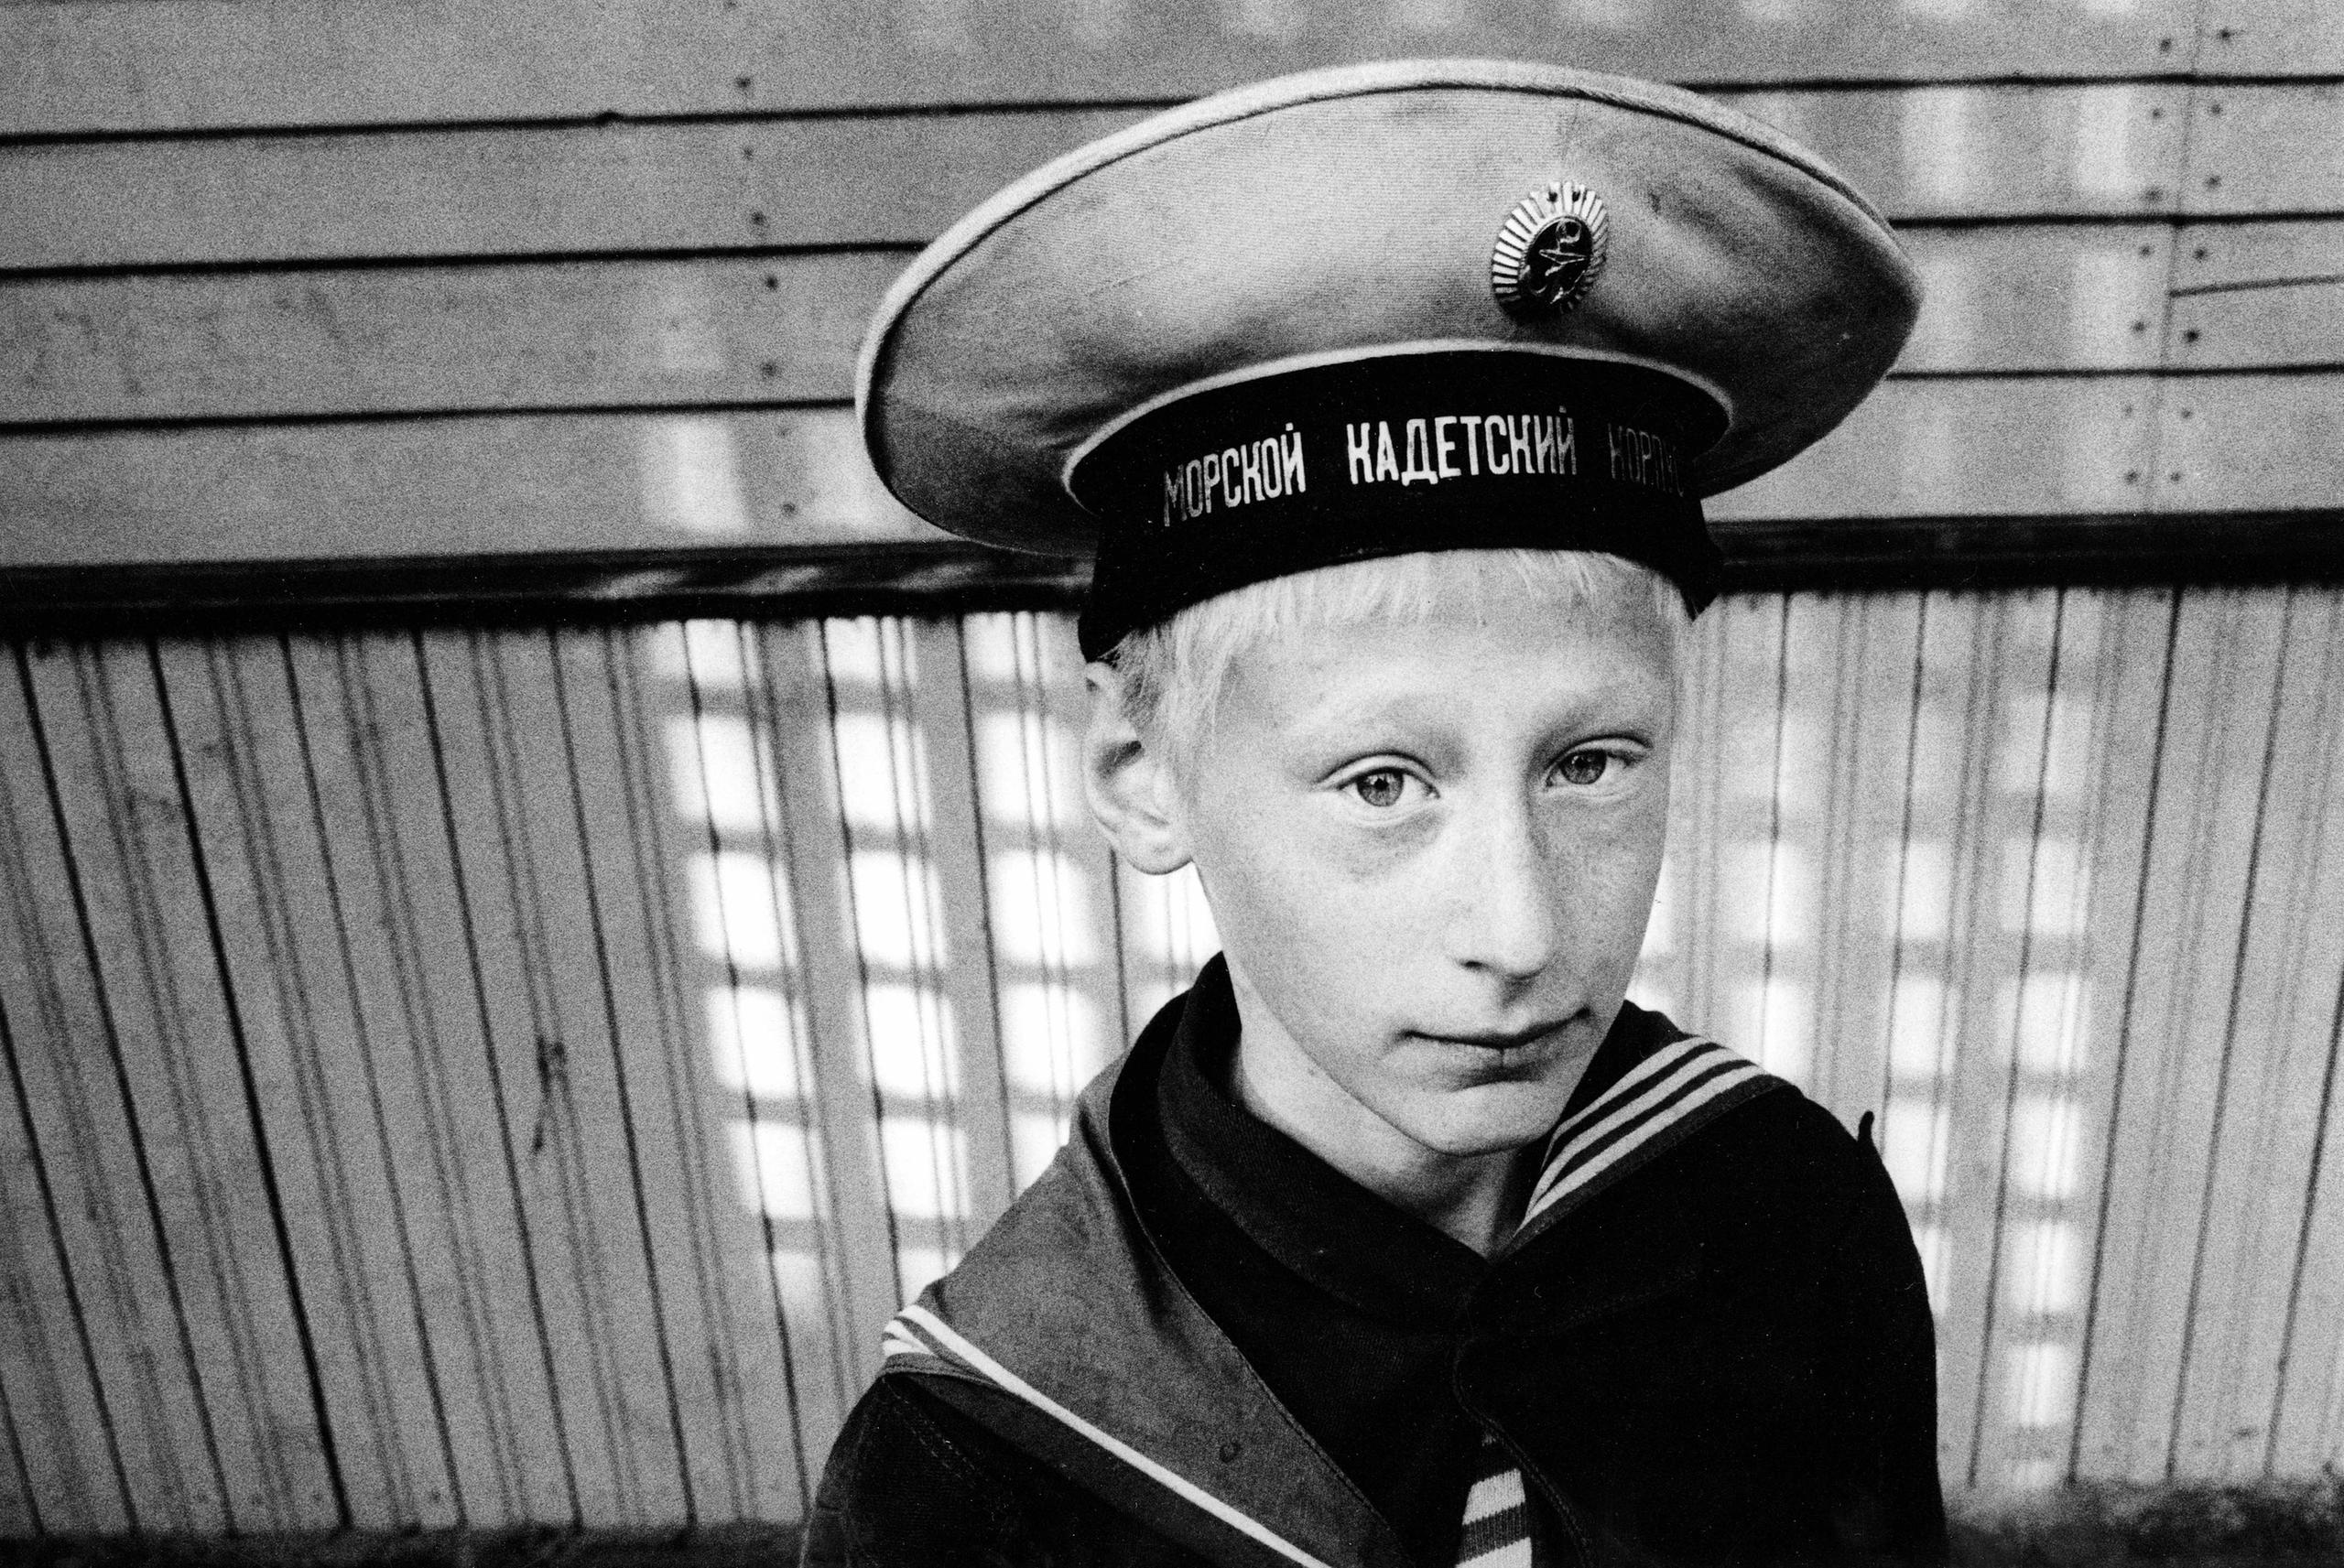 O cadete Vladimir (Vova), de 11 anos